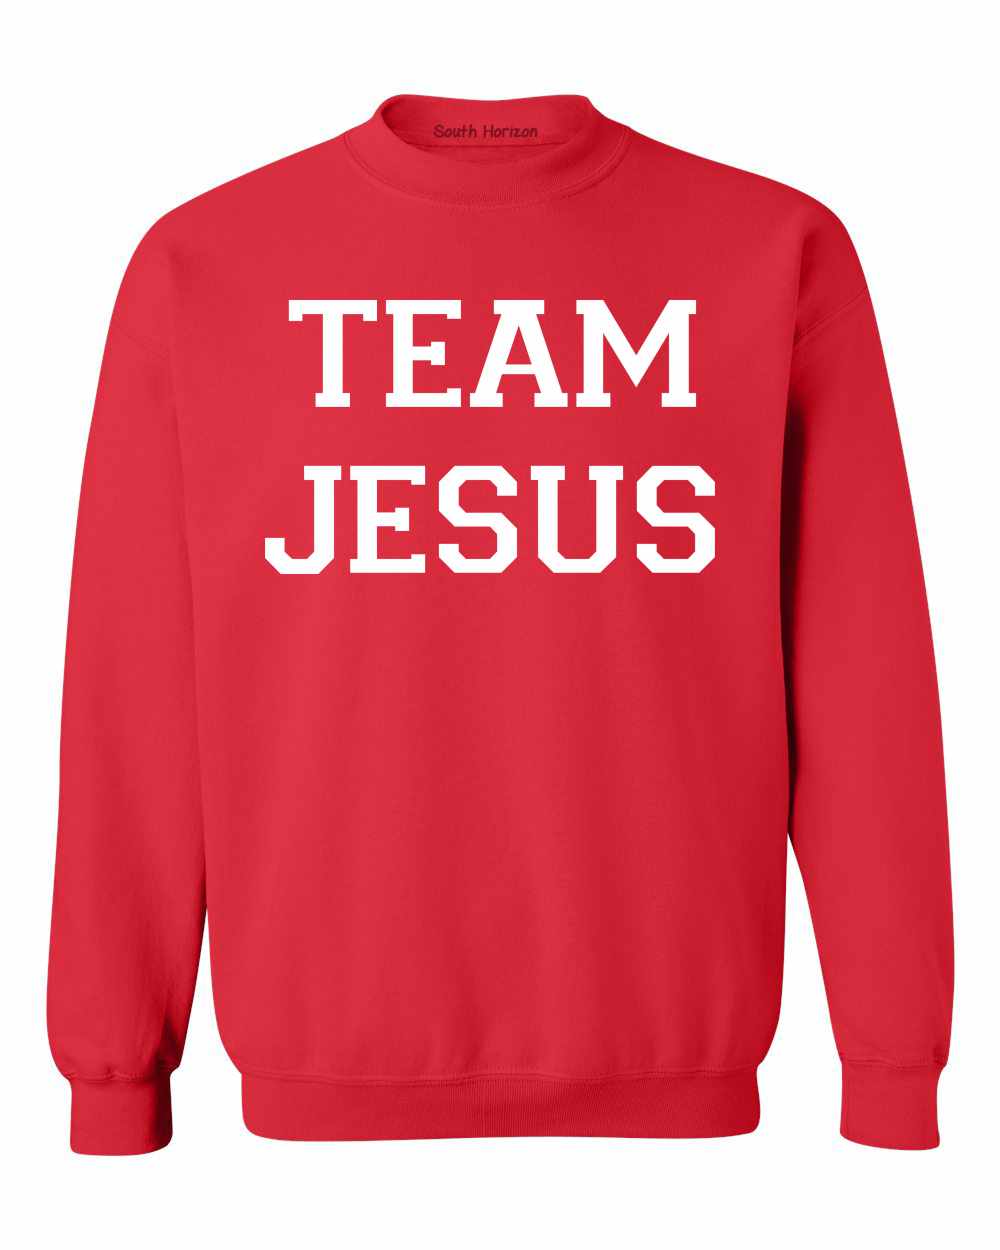 TEAM JESUS on SweatShirt (#589-11)